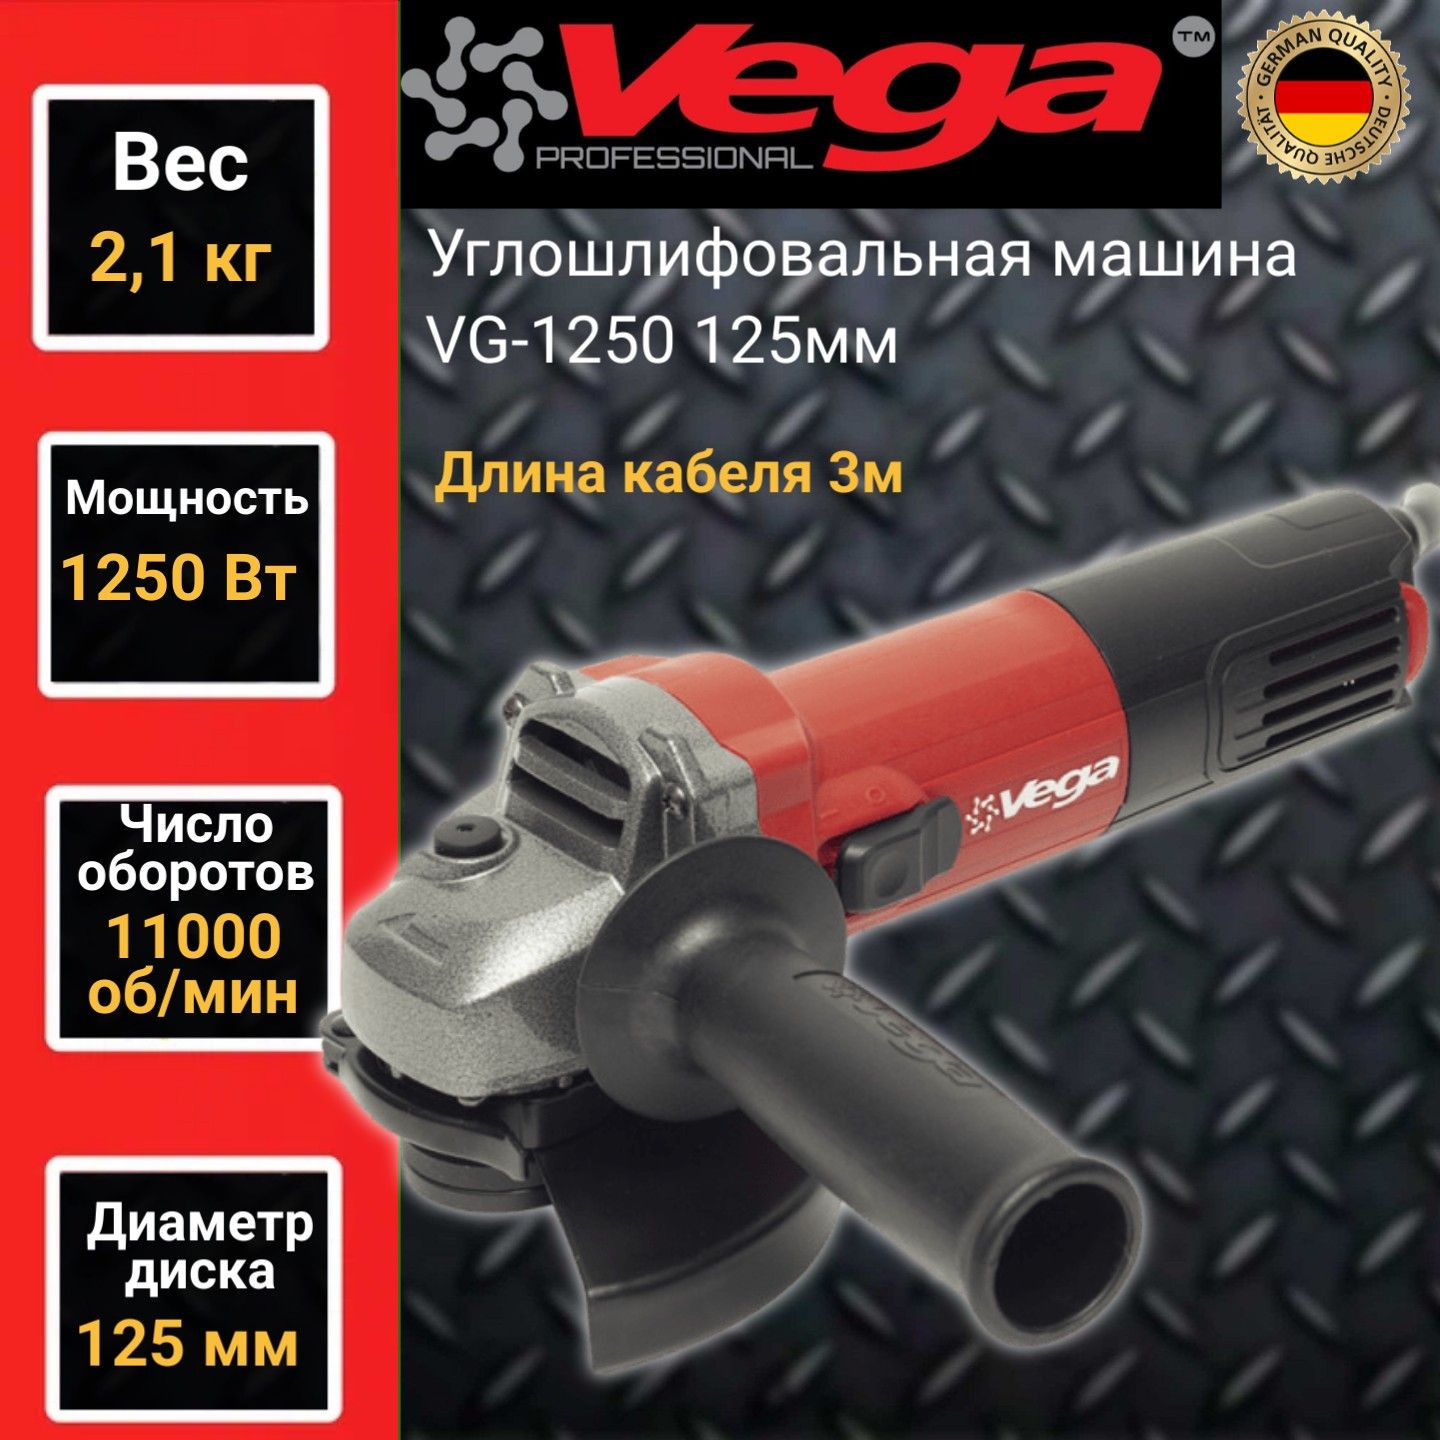 Углошлифовальная машина болгарка Vega Professional VG 1250, 125мм круг,1250Вт,11000об/мин угловая шлифмашина daewoo dag 1250 125